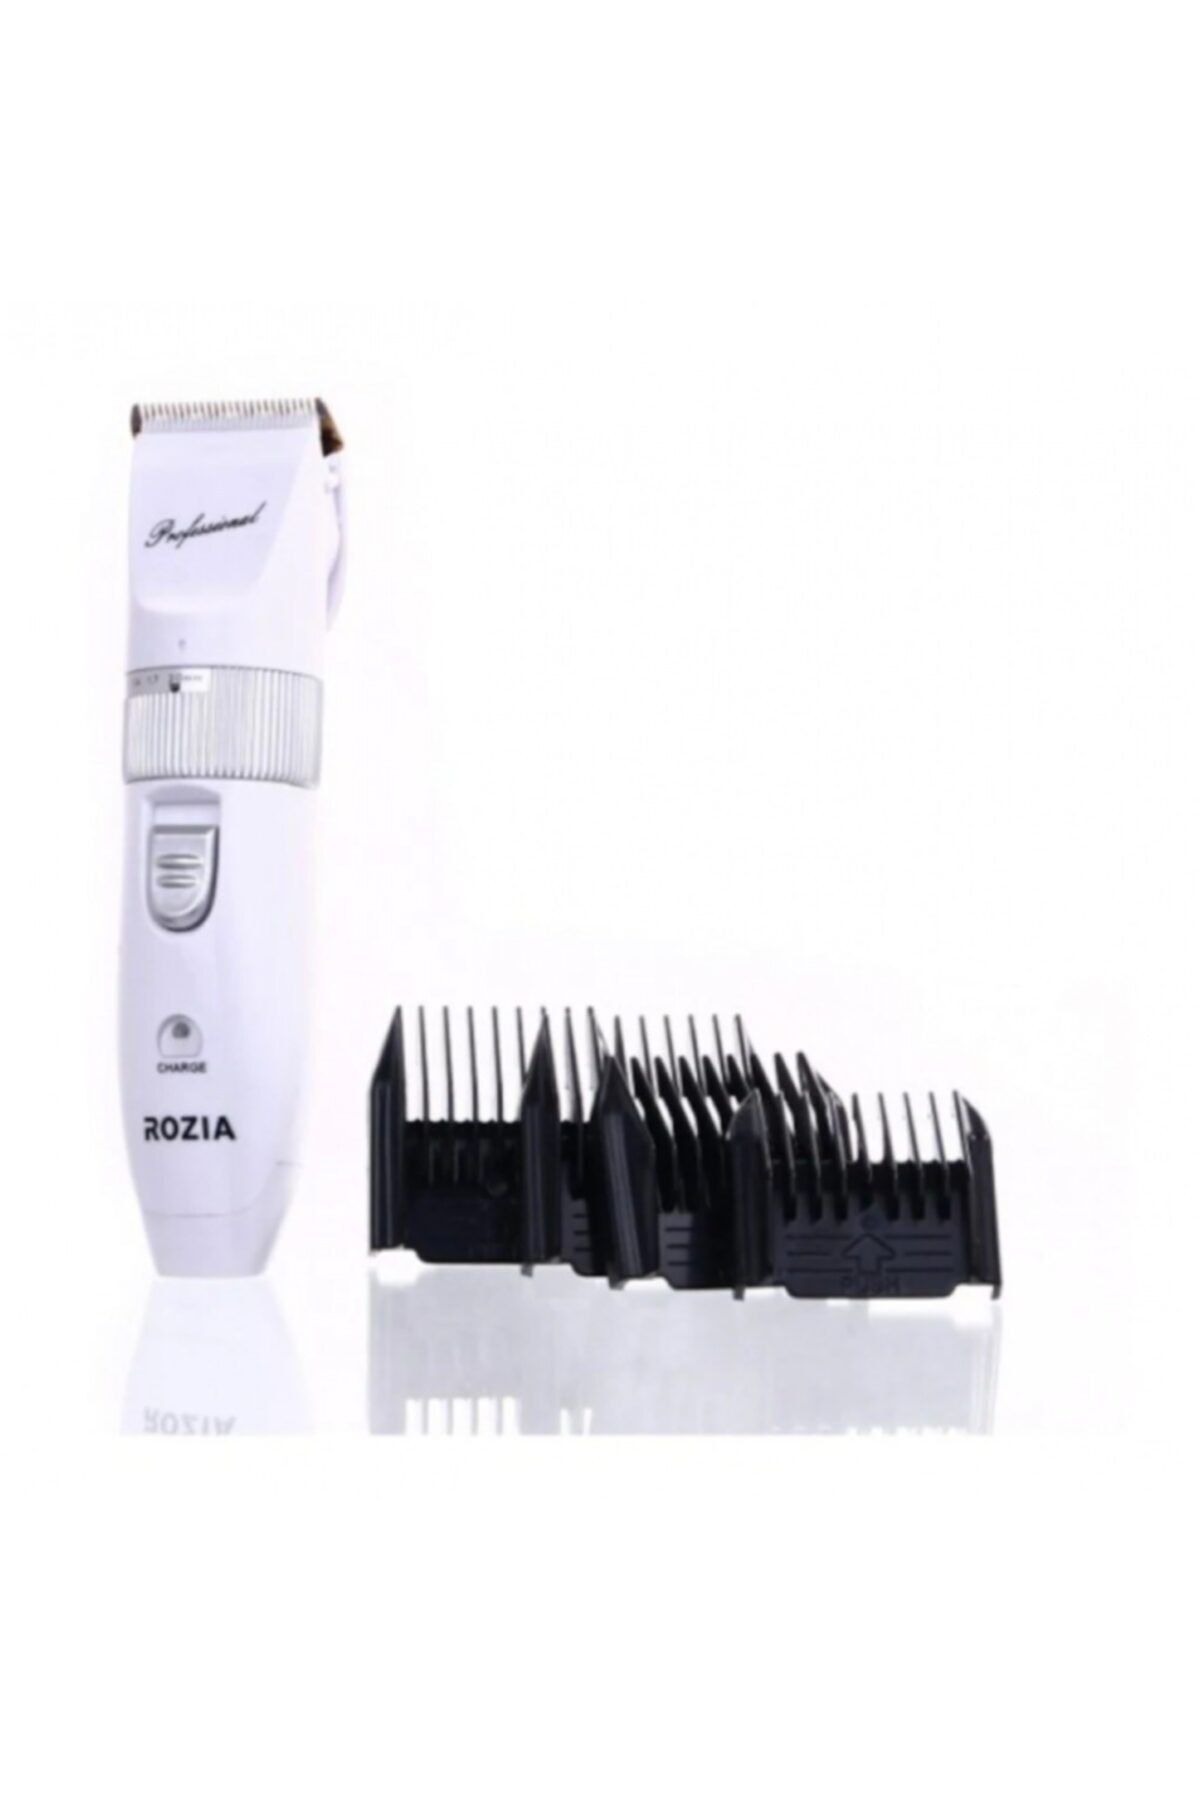 pazariz Rozia Hq-2203 Tıraş Makinesi Profesyonel Şarjlı Saç Ve Sakal Tıra